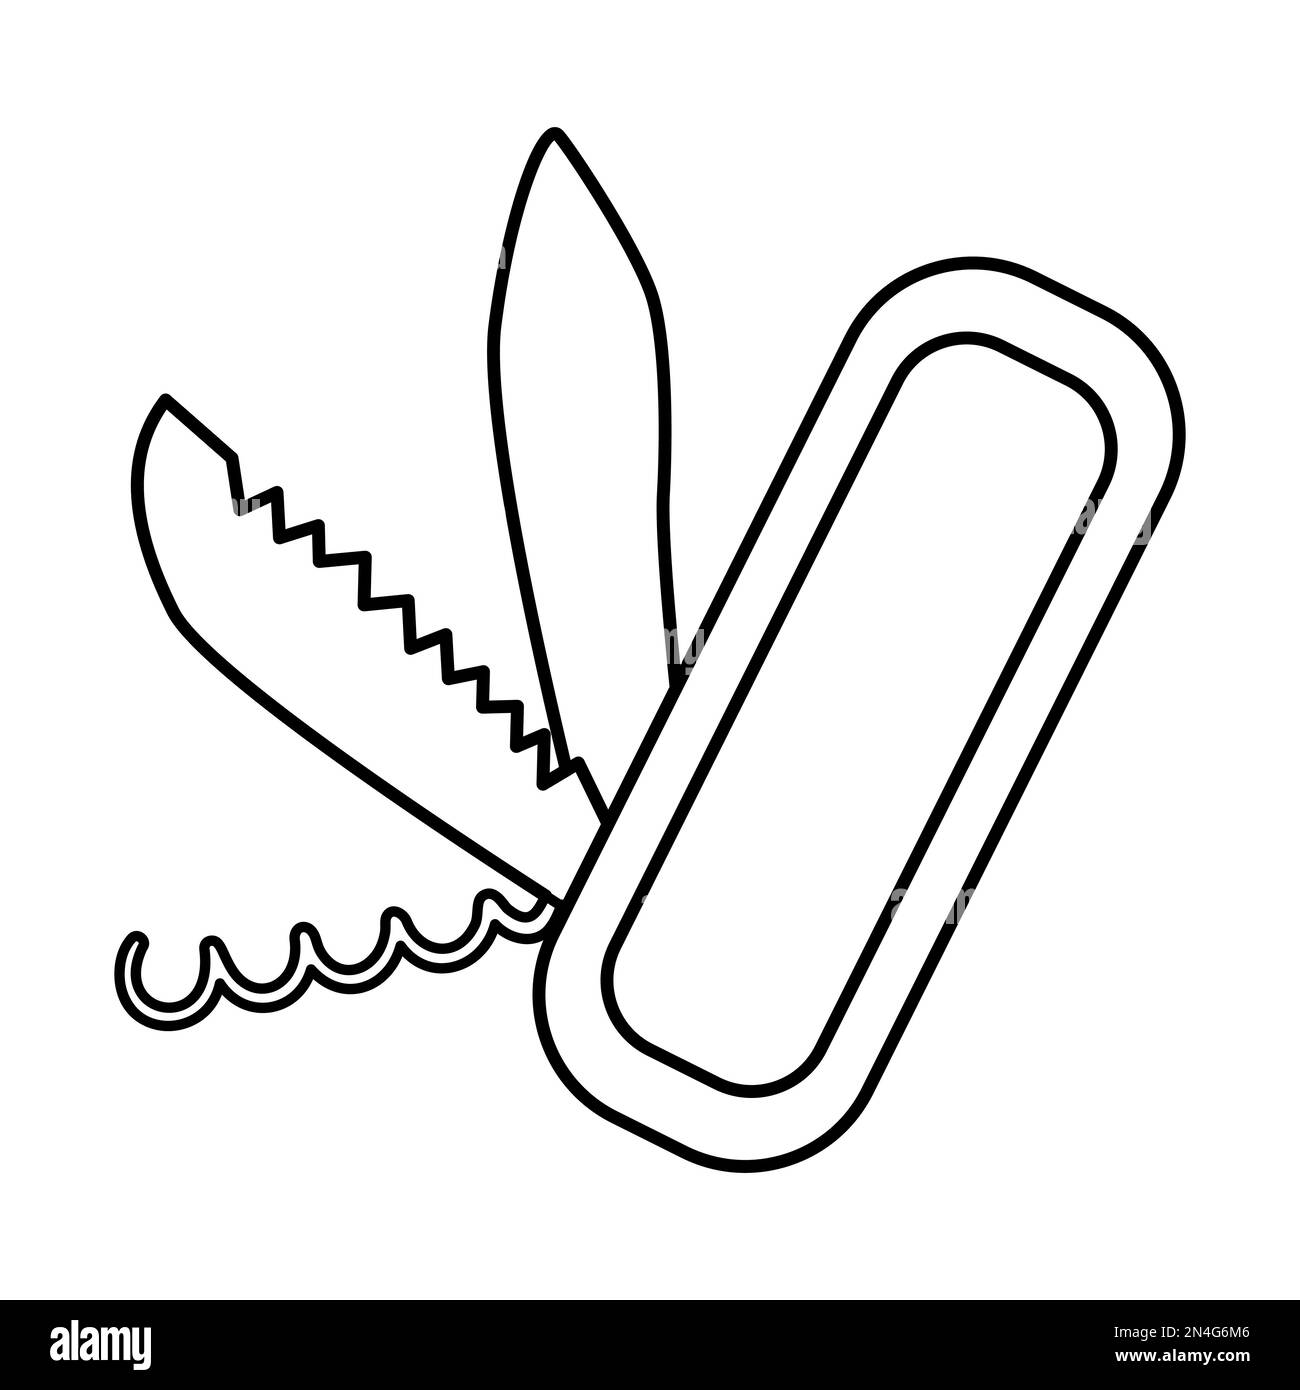 Icona a forma di coltello pieghevole in bianco e nero vettoriale isolata su sfondo bianco. Illustrazione dell'apparecchiatura portatile per il taglio di contorni. Dispositivo di chiusura per outdo attivo Illustrazione Vettoriale